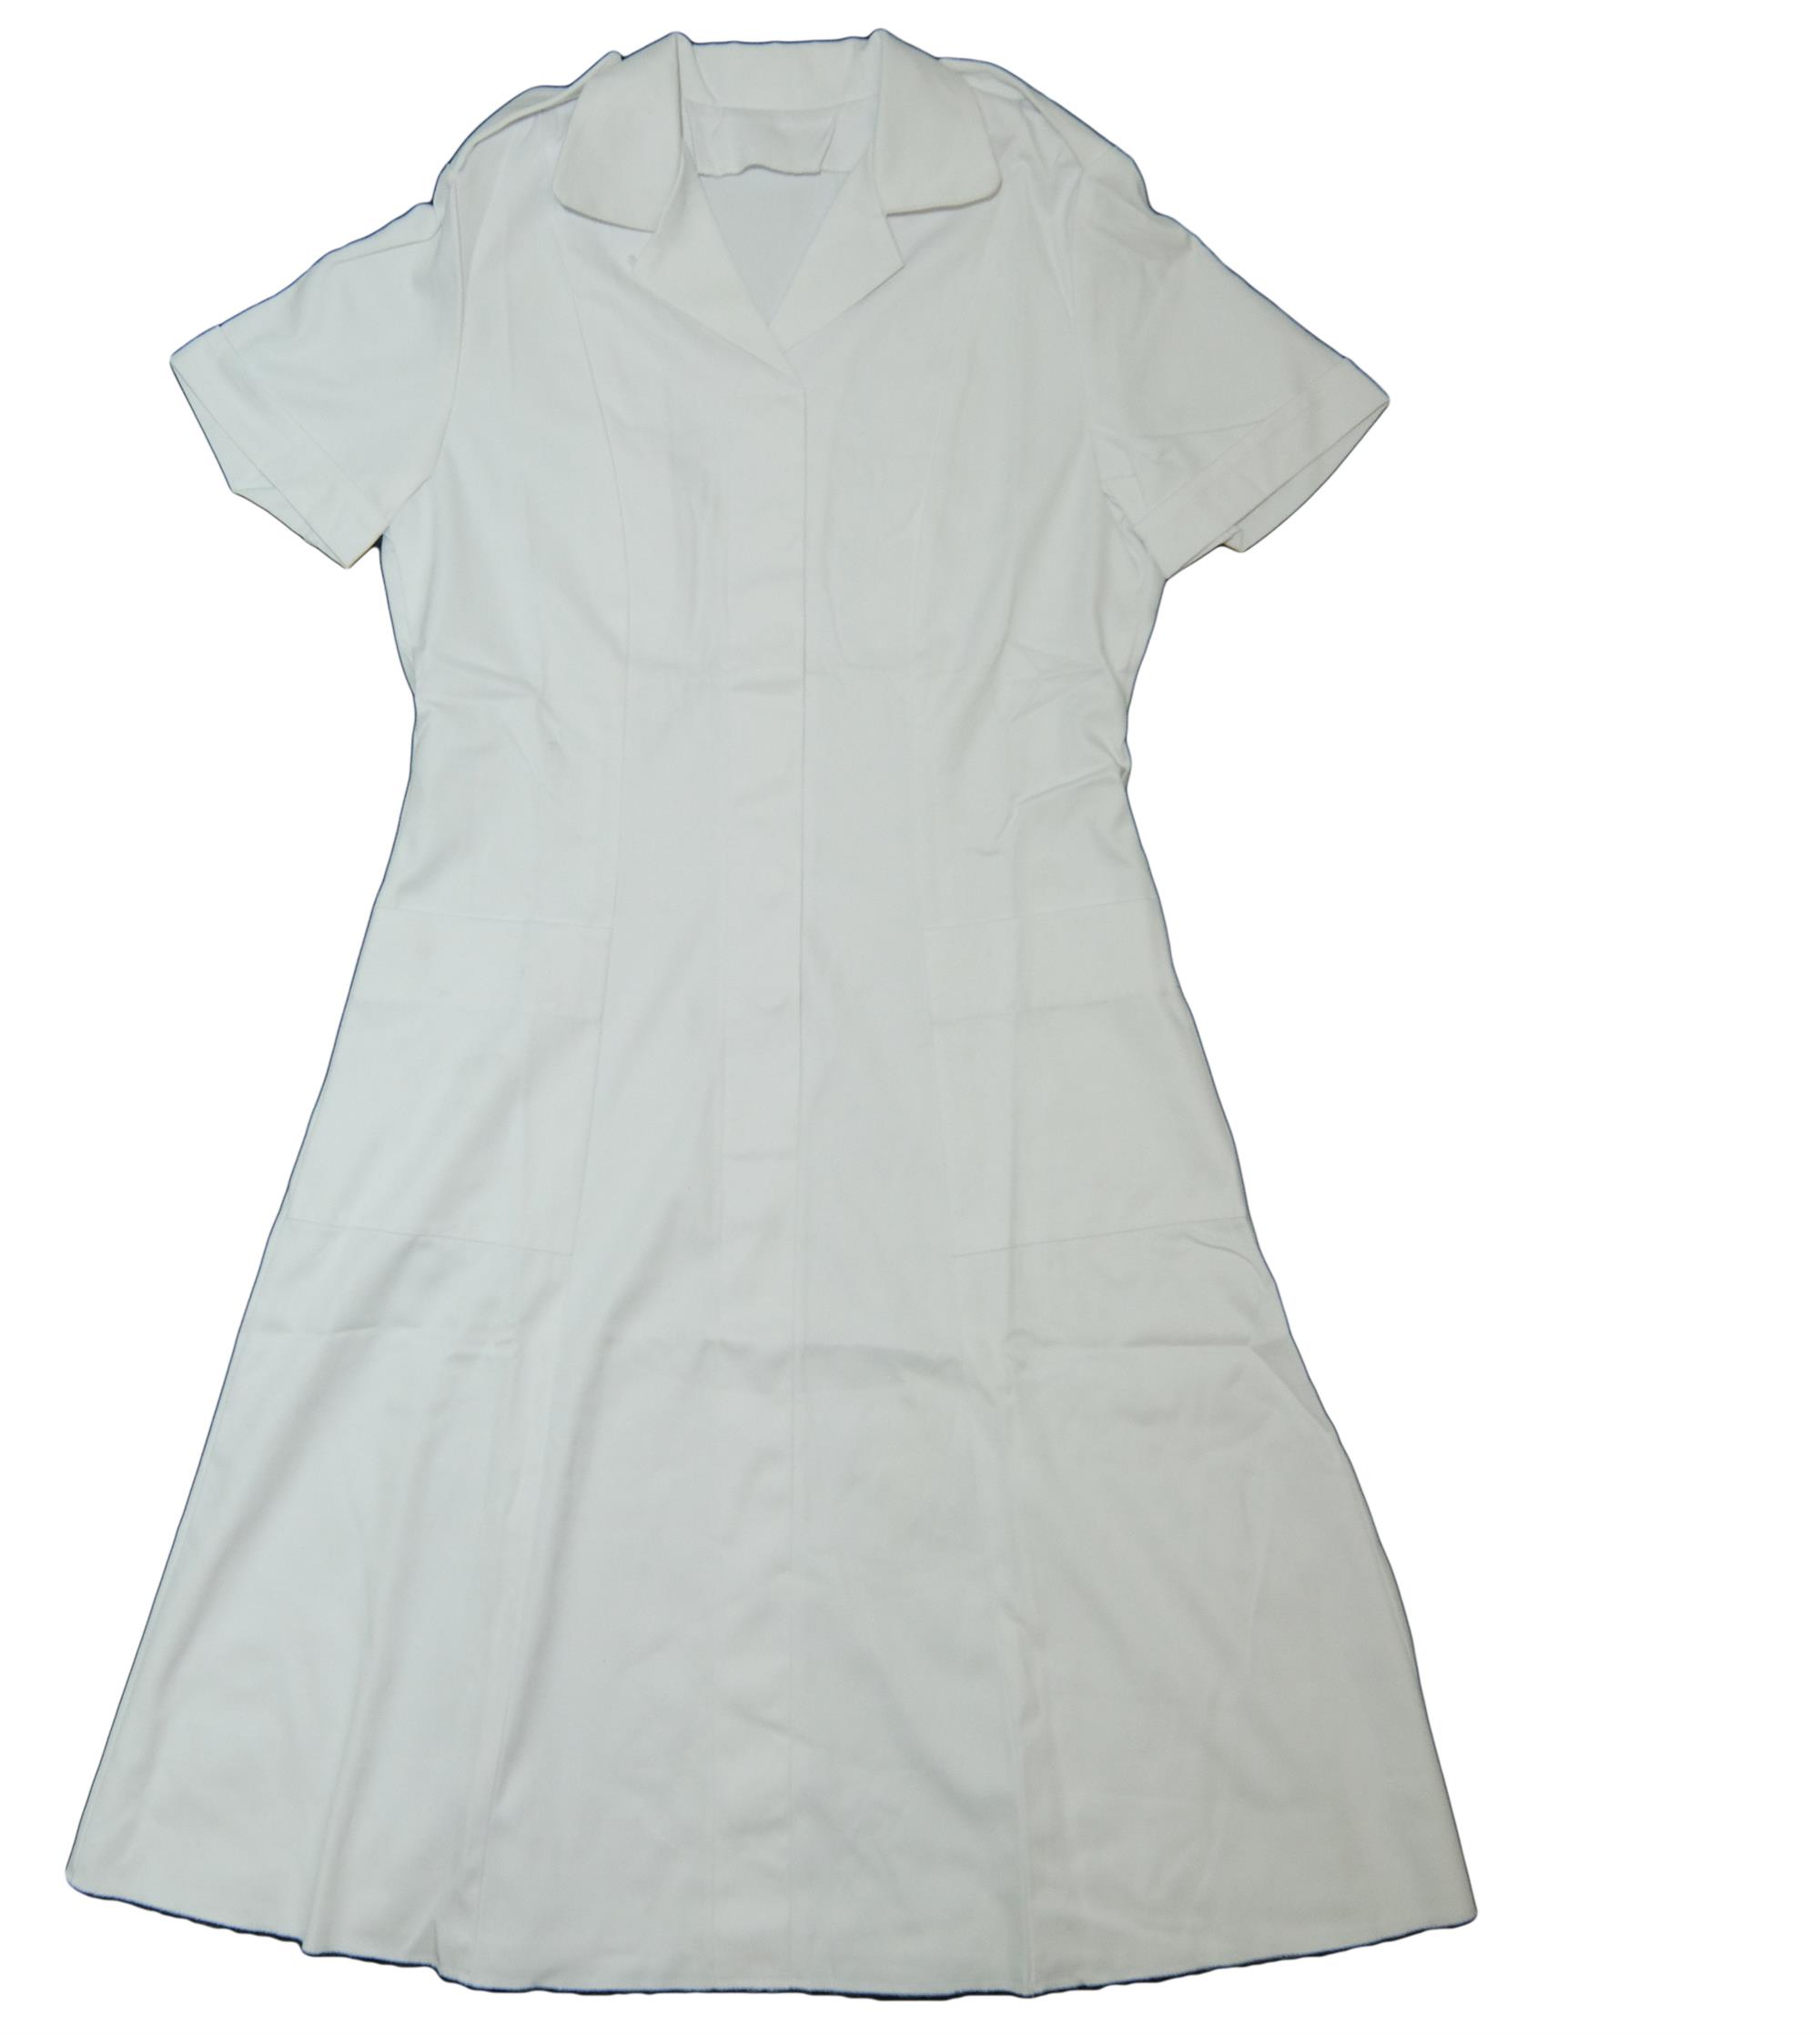 British Army Surplus White Ward / Nurses Uniform Gown - Surplus & Lost